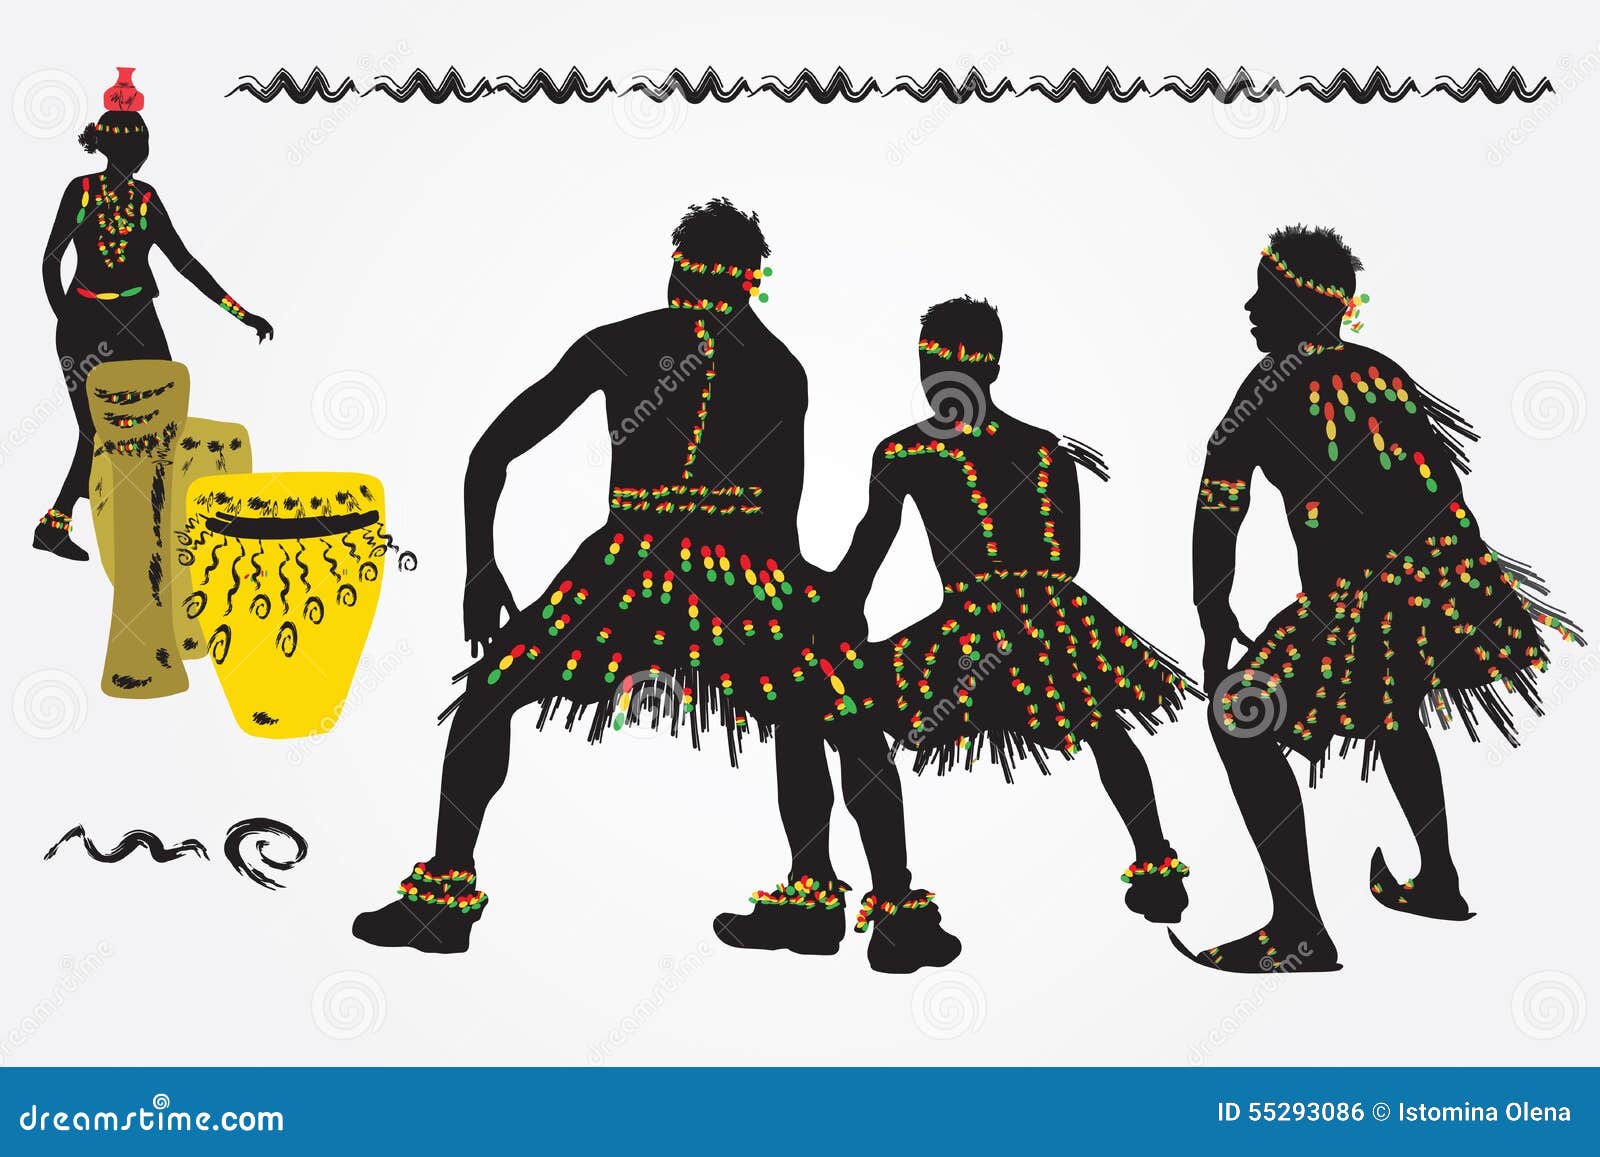 非洲小国乌干达，全国禁止穿超短裙，穿凉鞋会被罚吃下去 - 知乎